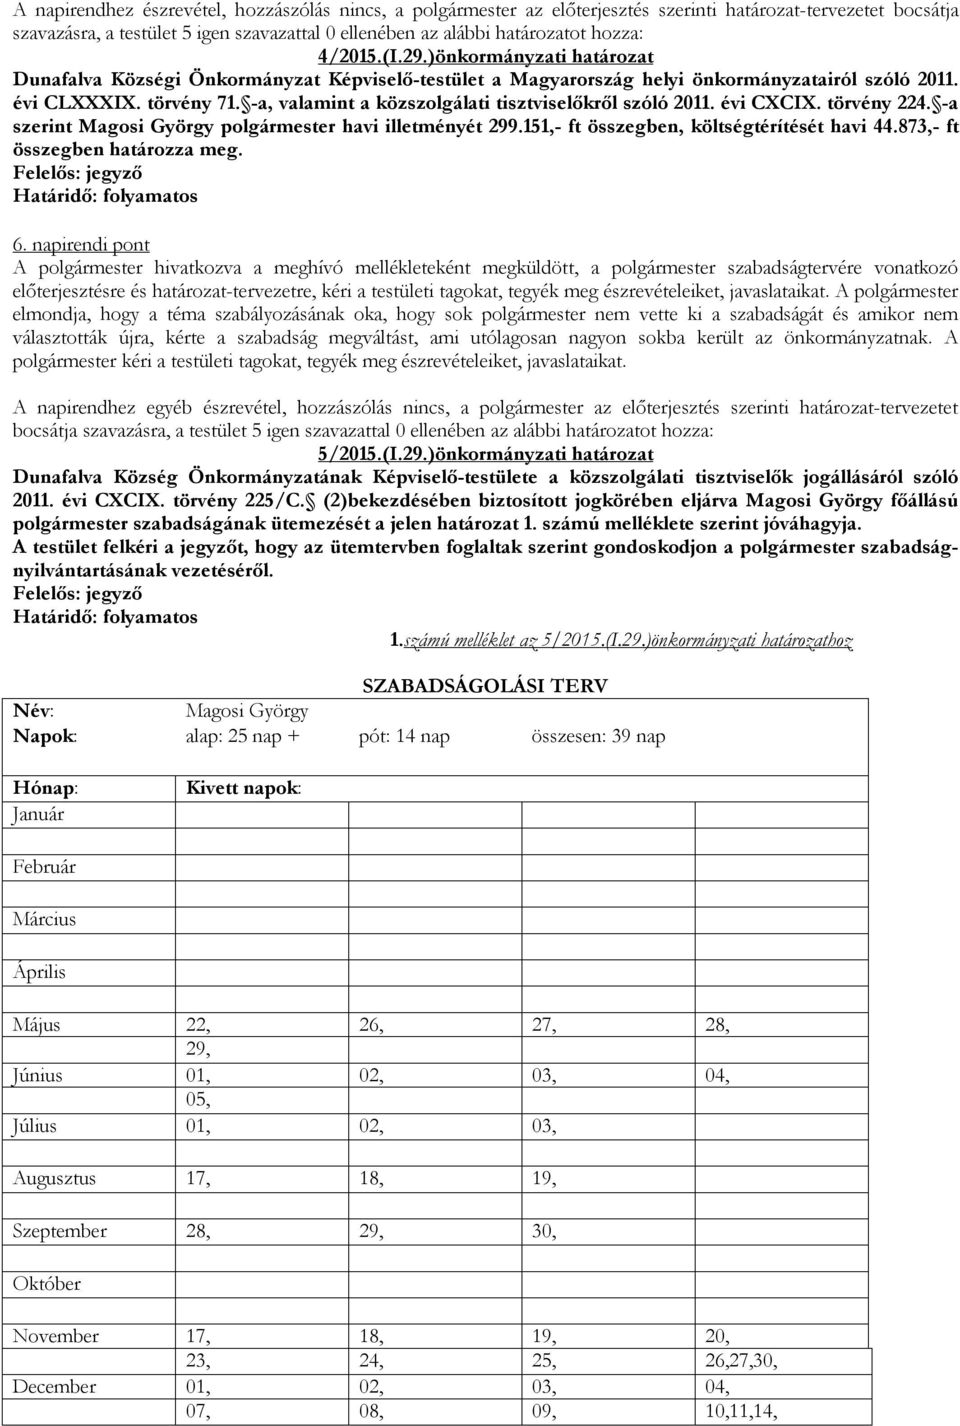 -a, valamint a közszolgálati tisztviselőkről szóló 2011. évi CXCIX. törvény 224. -a szerint Magosi György polgármester havi illetményét 299.151,- ft összegben, költségtérítését havi 44.